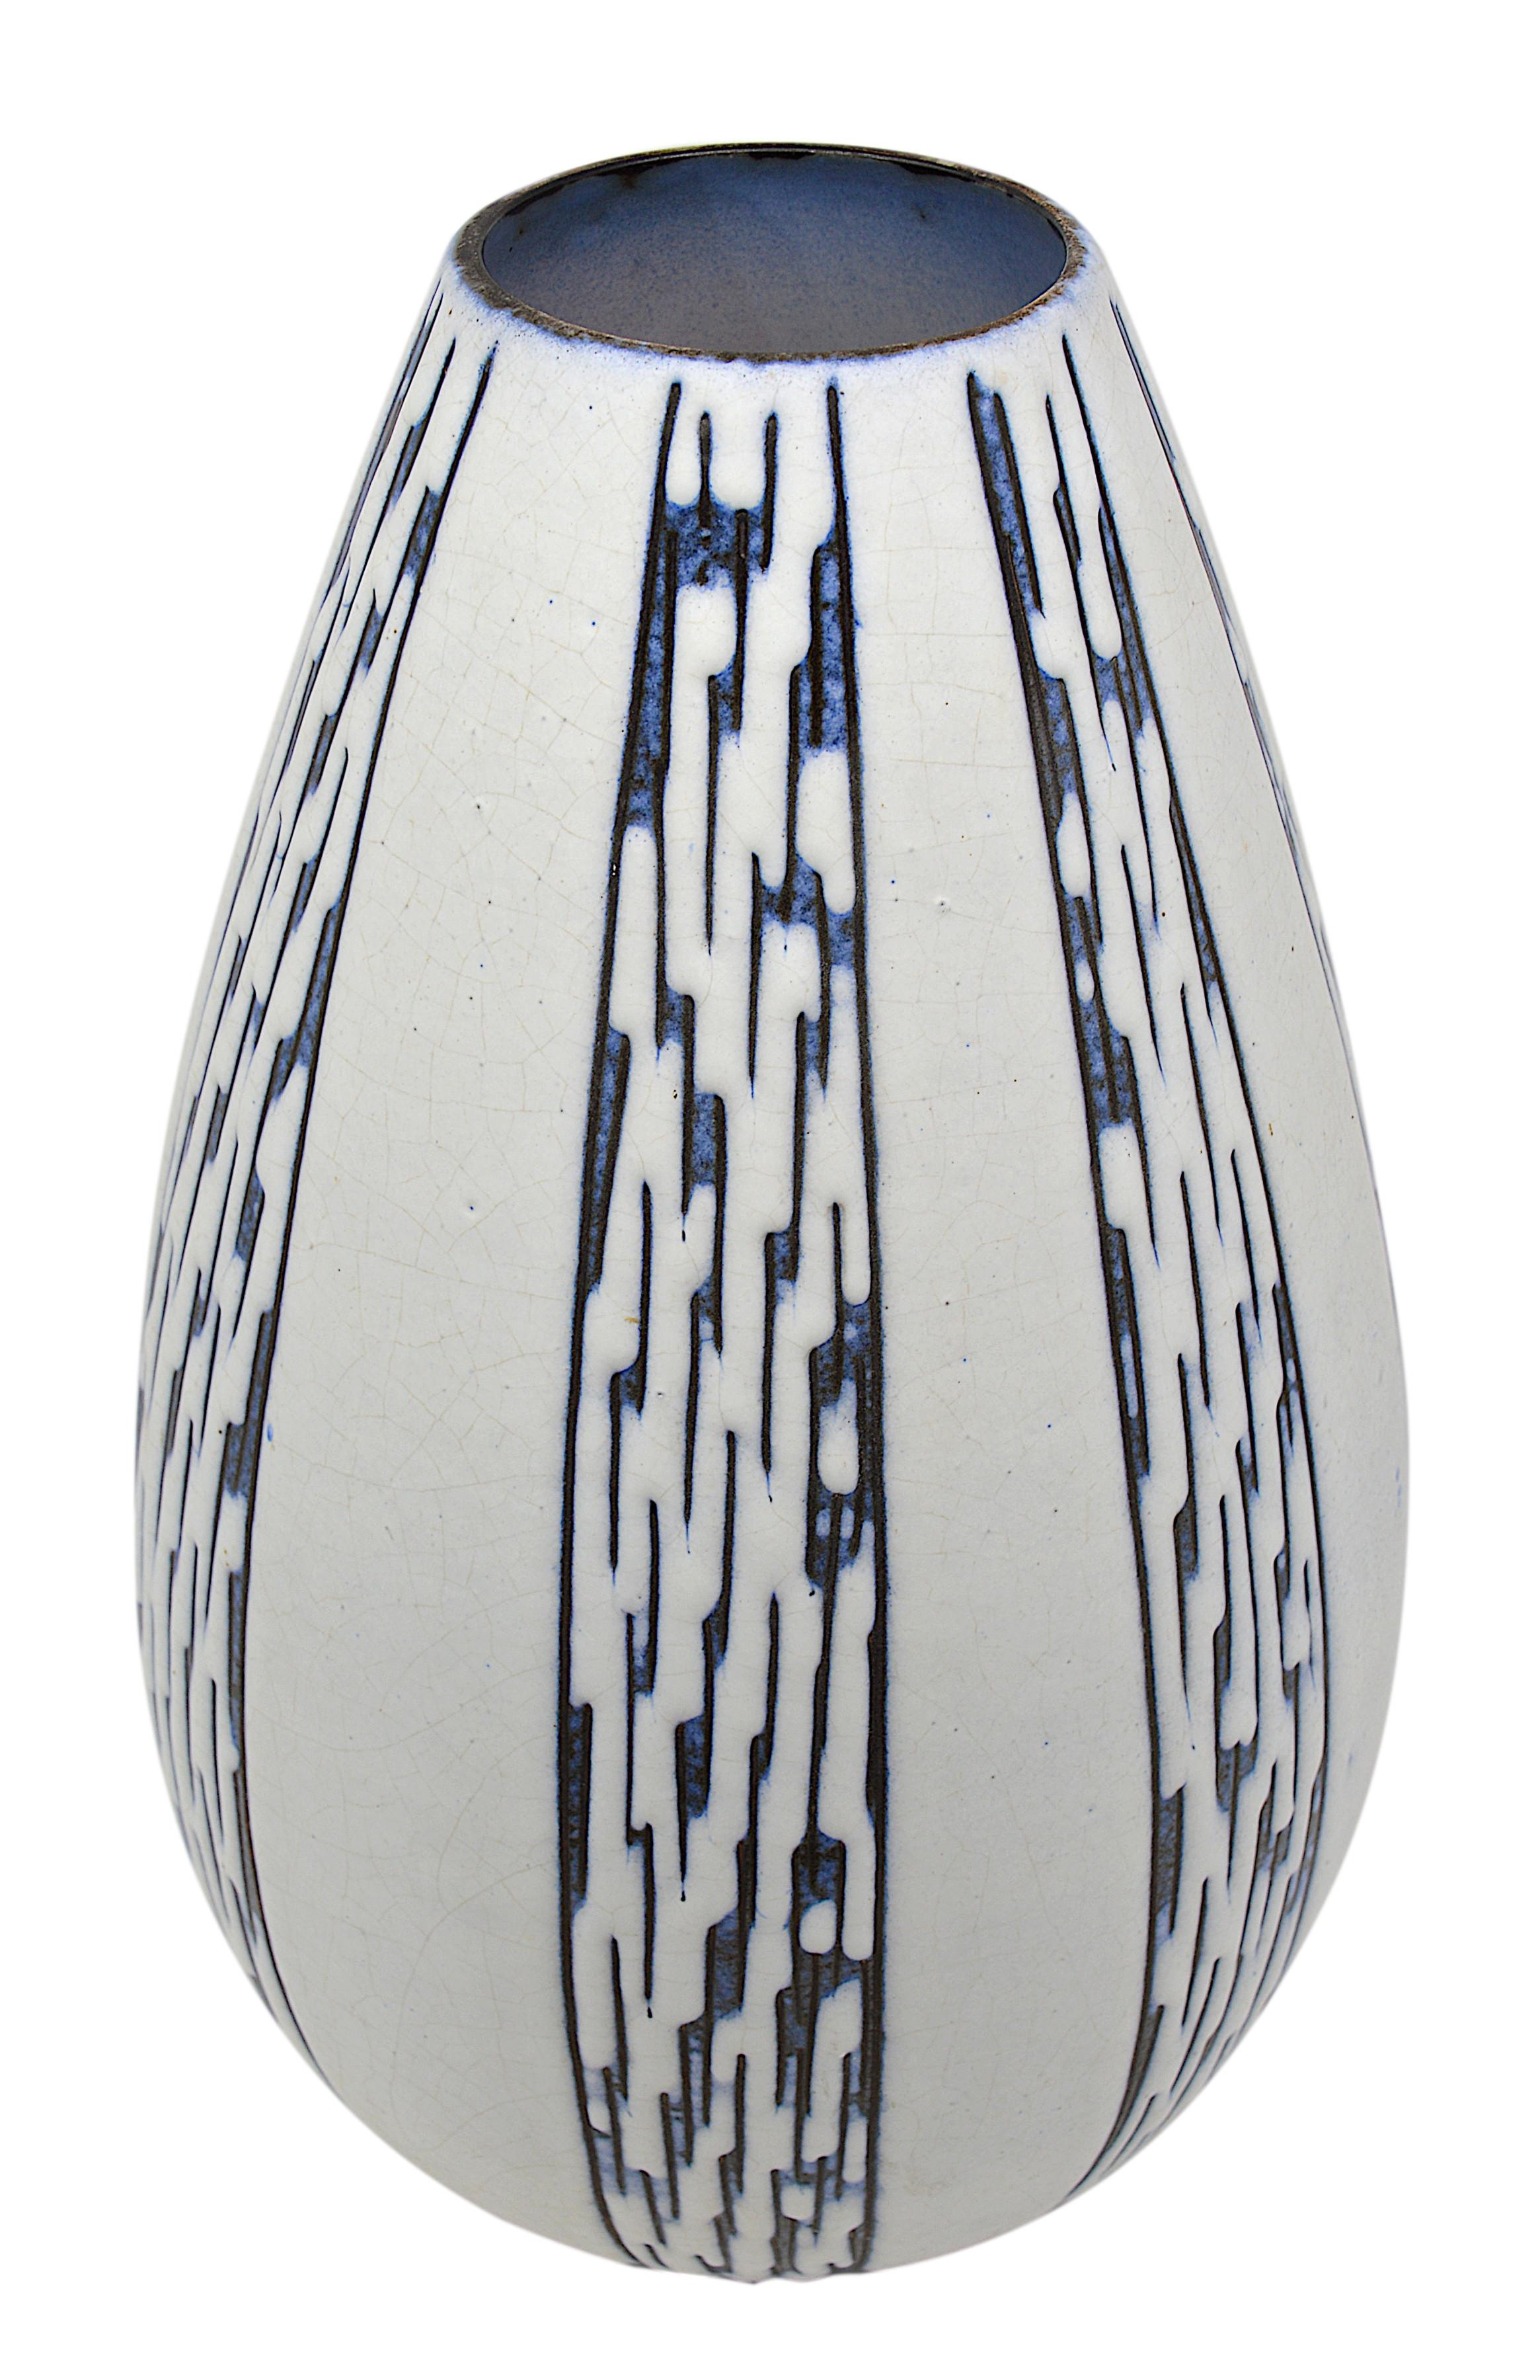 Énorme vase de sol en grès de Steuler Industriewerke, Allemagne, années 1930-1940. Pièce muséale pouvant être utilisée comme pied de lampe. Vase en grès émaillé craquelé blanc cassé avec décor vertical noir et bleu. Hauteur : 50,3 cm (19,8